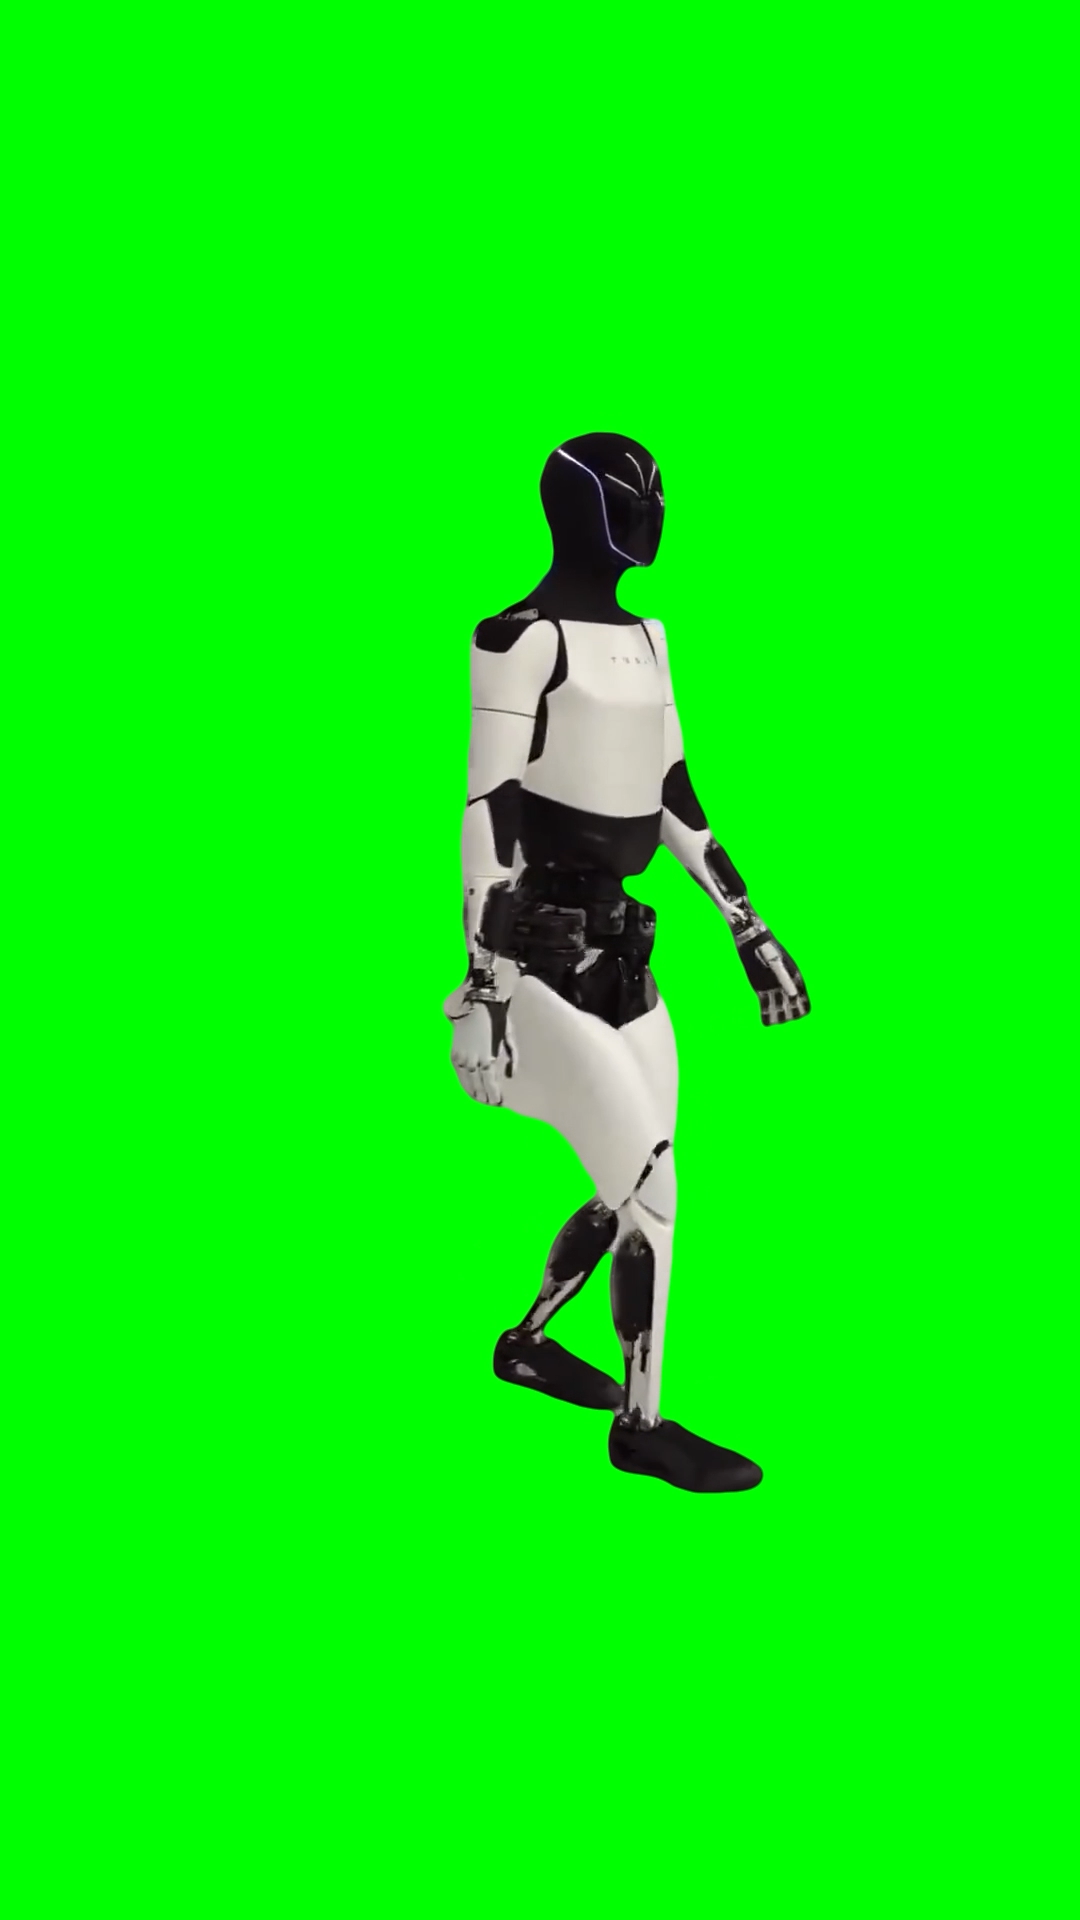 Tesla Optimus Robot walking  (Green Screen)